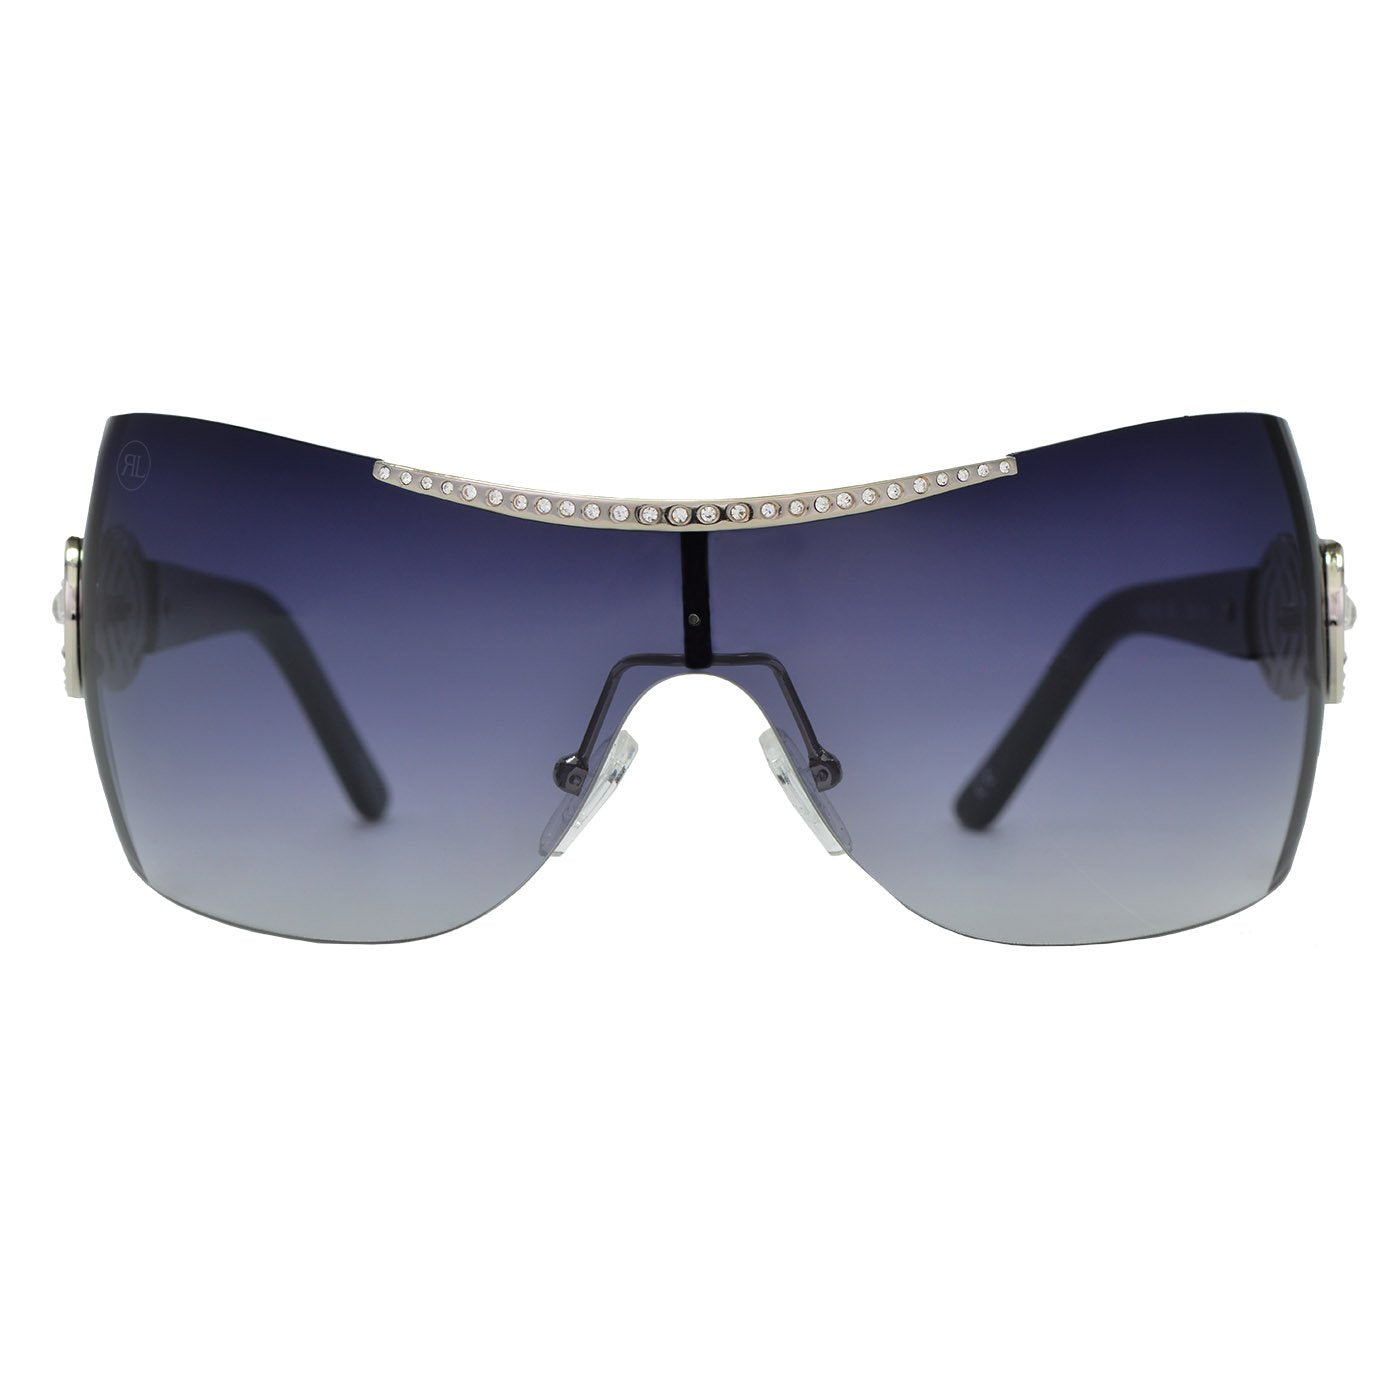 RENATO LANDINI Women's Sunglasses Chrome & Black with Stones/ Allure